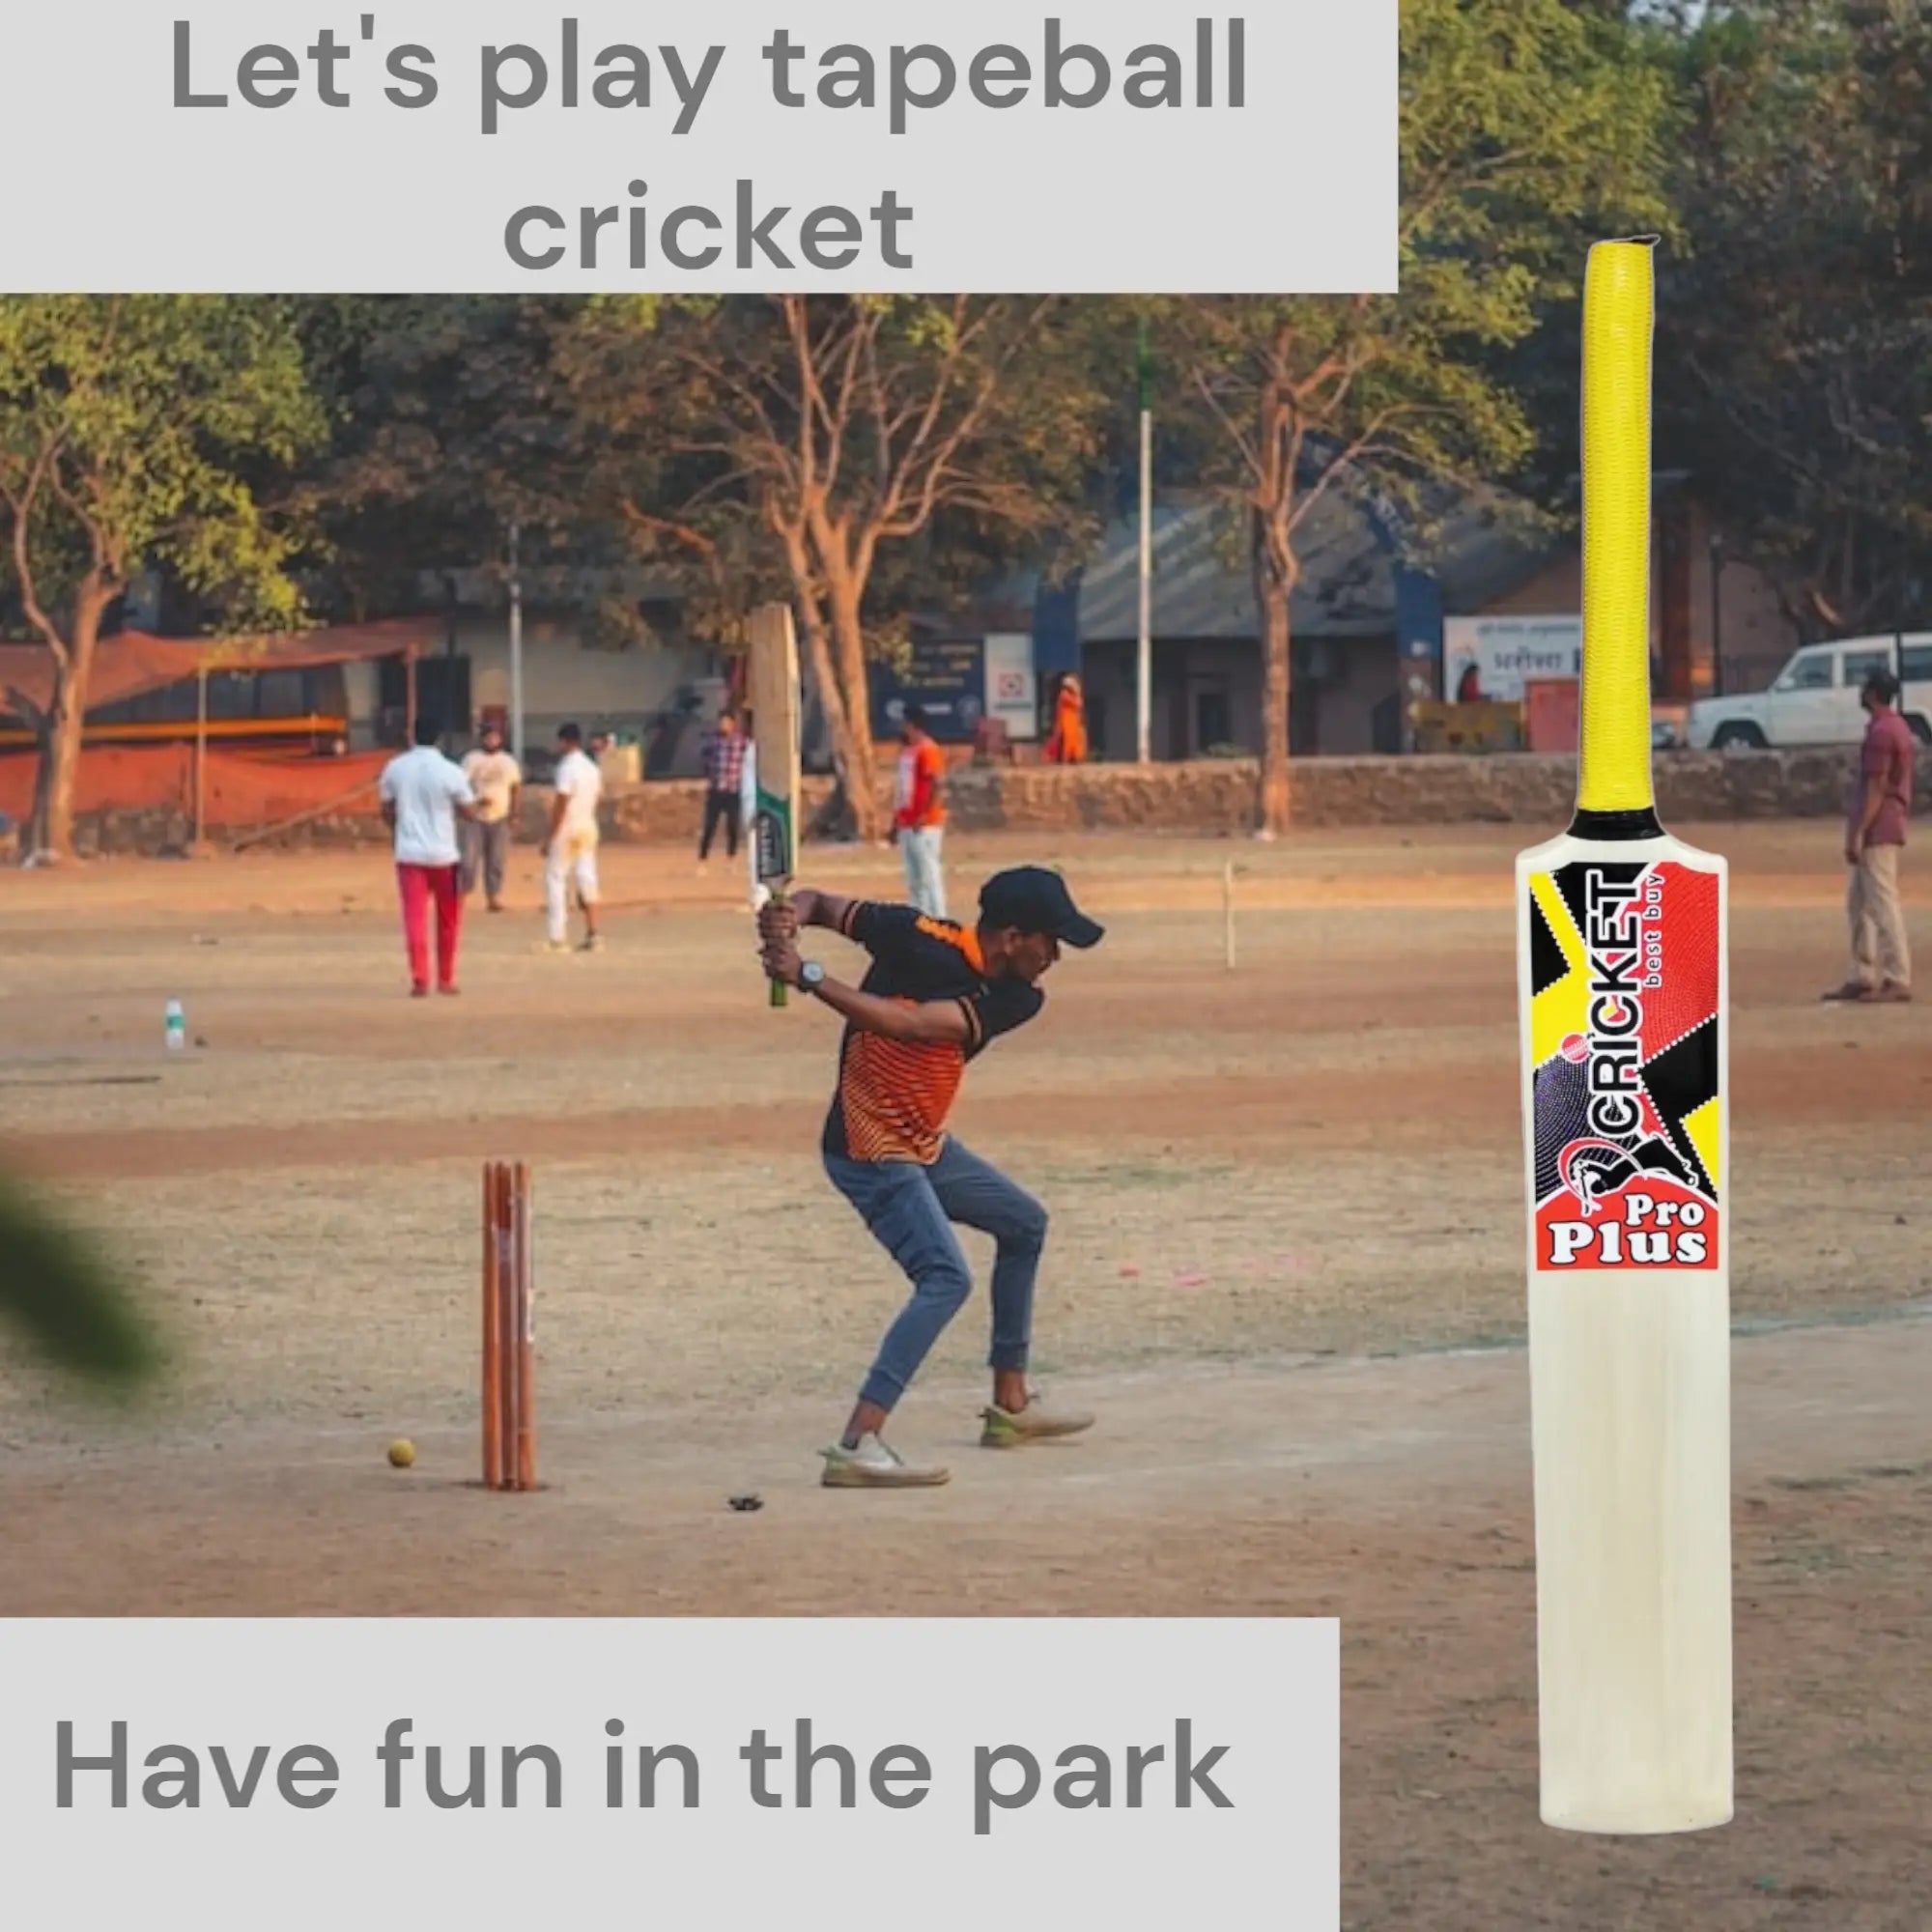 CBB Pro Plus Cricket Bat For Softball Tape Tennis Ball Lightweight Thick Edges Men - BATS - SOFTBALL